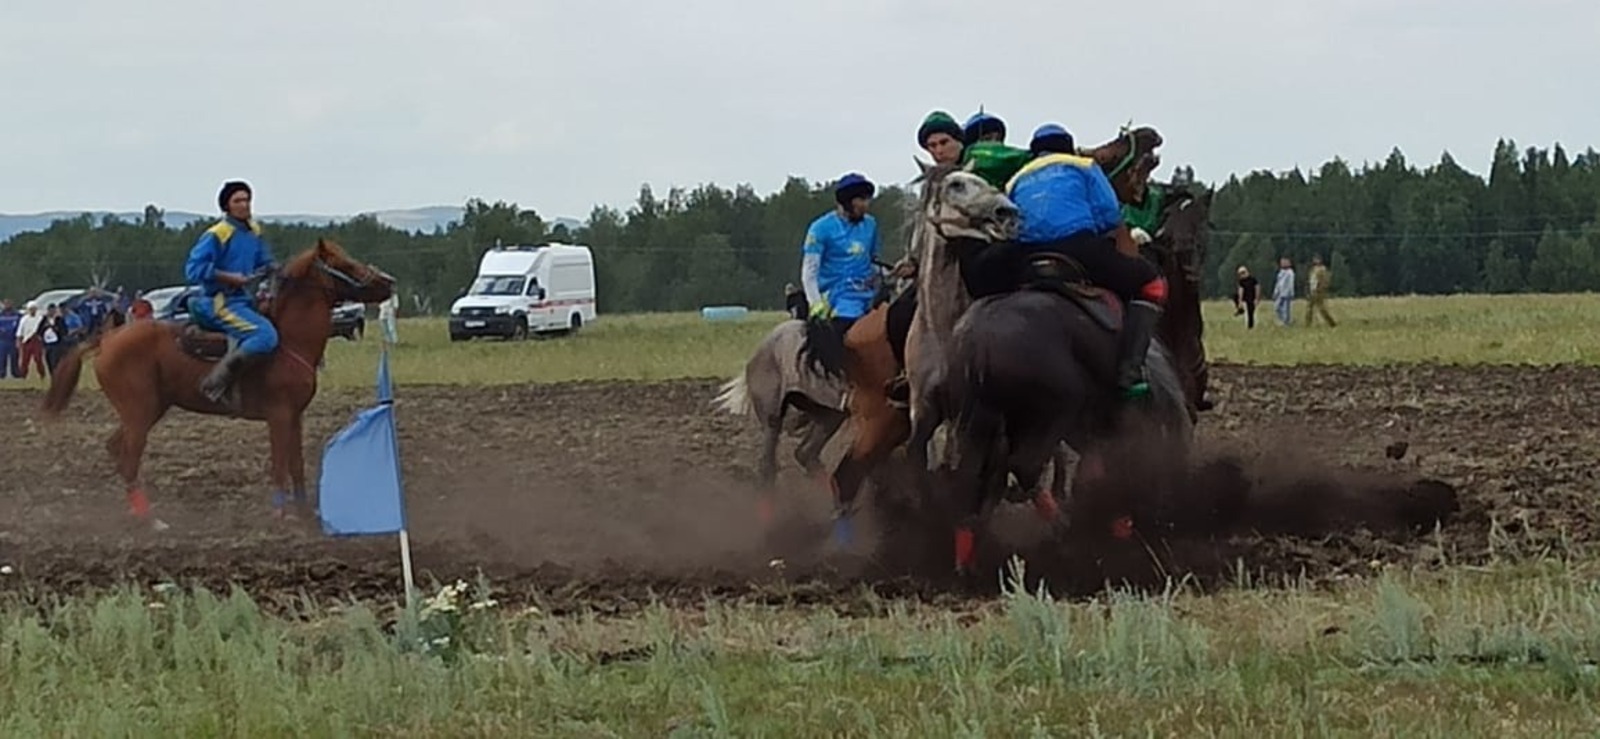 На фестивале башкирской лошади начались финальная игра "Ылак" и скачки